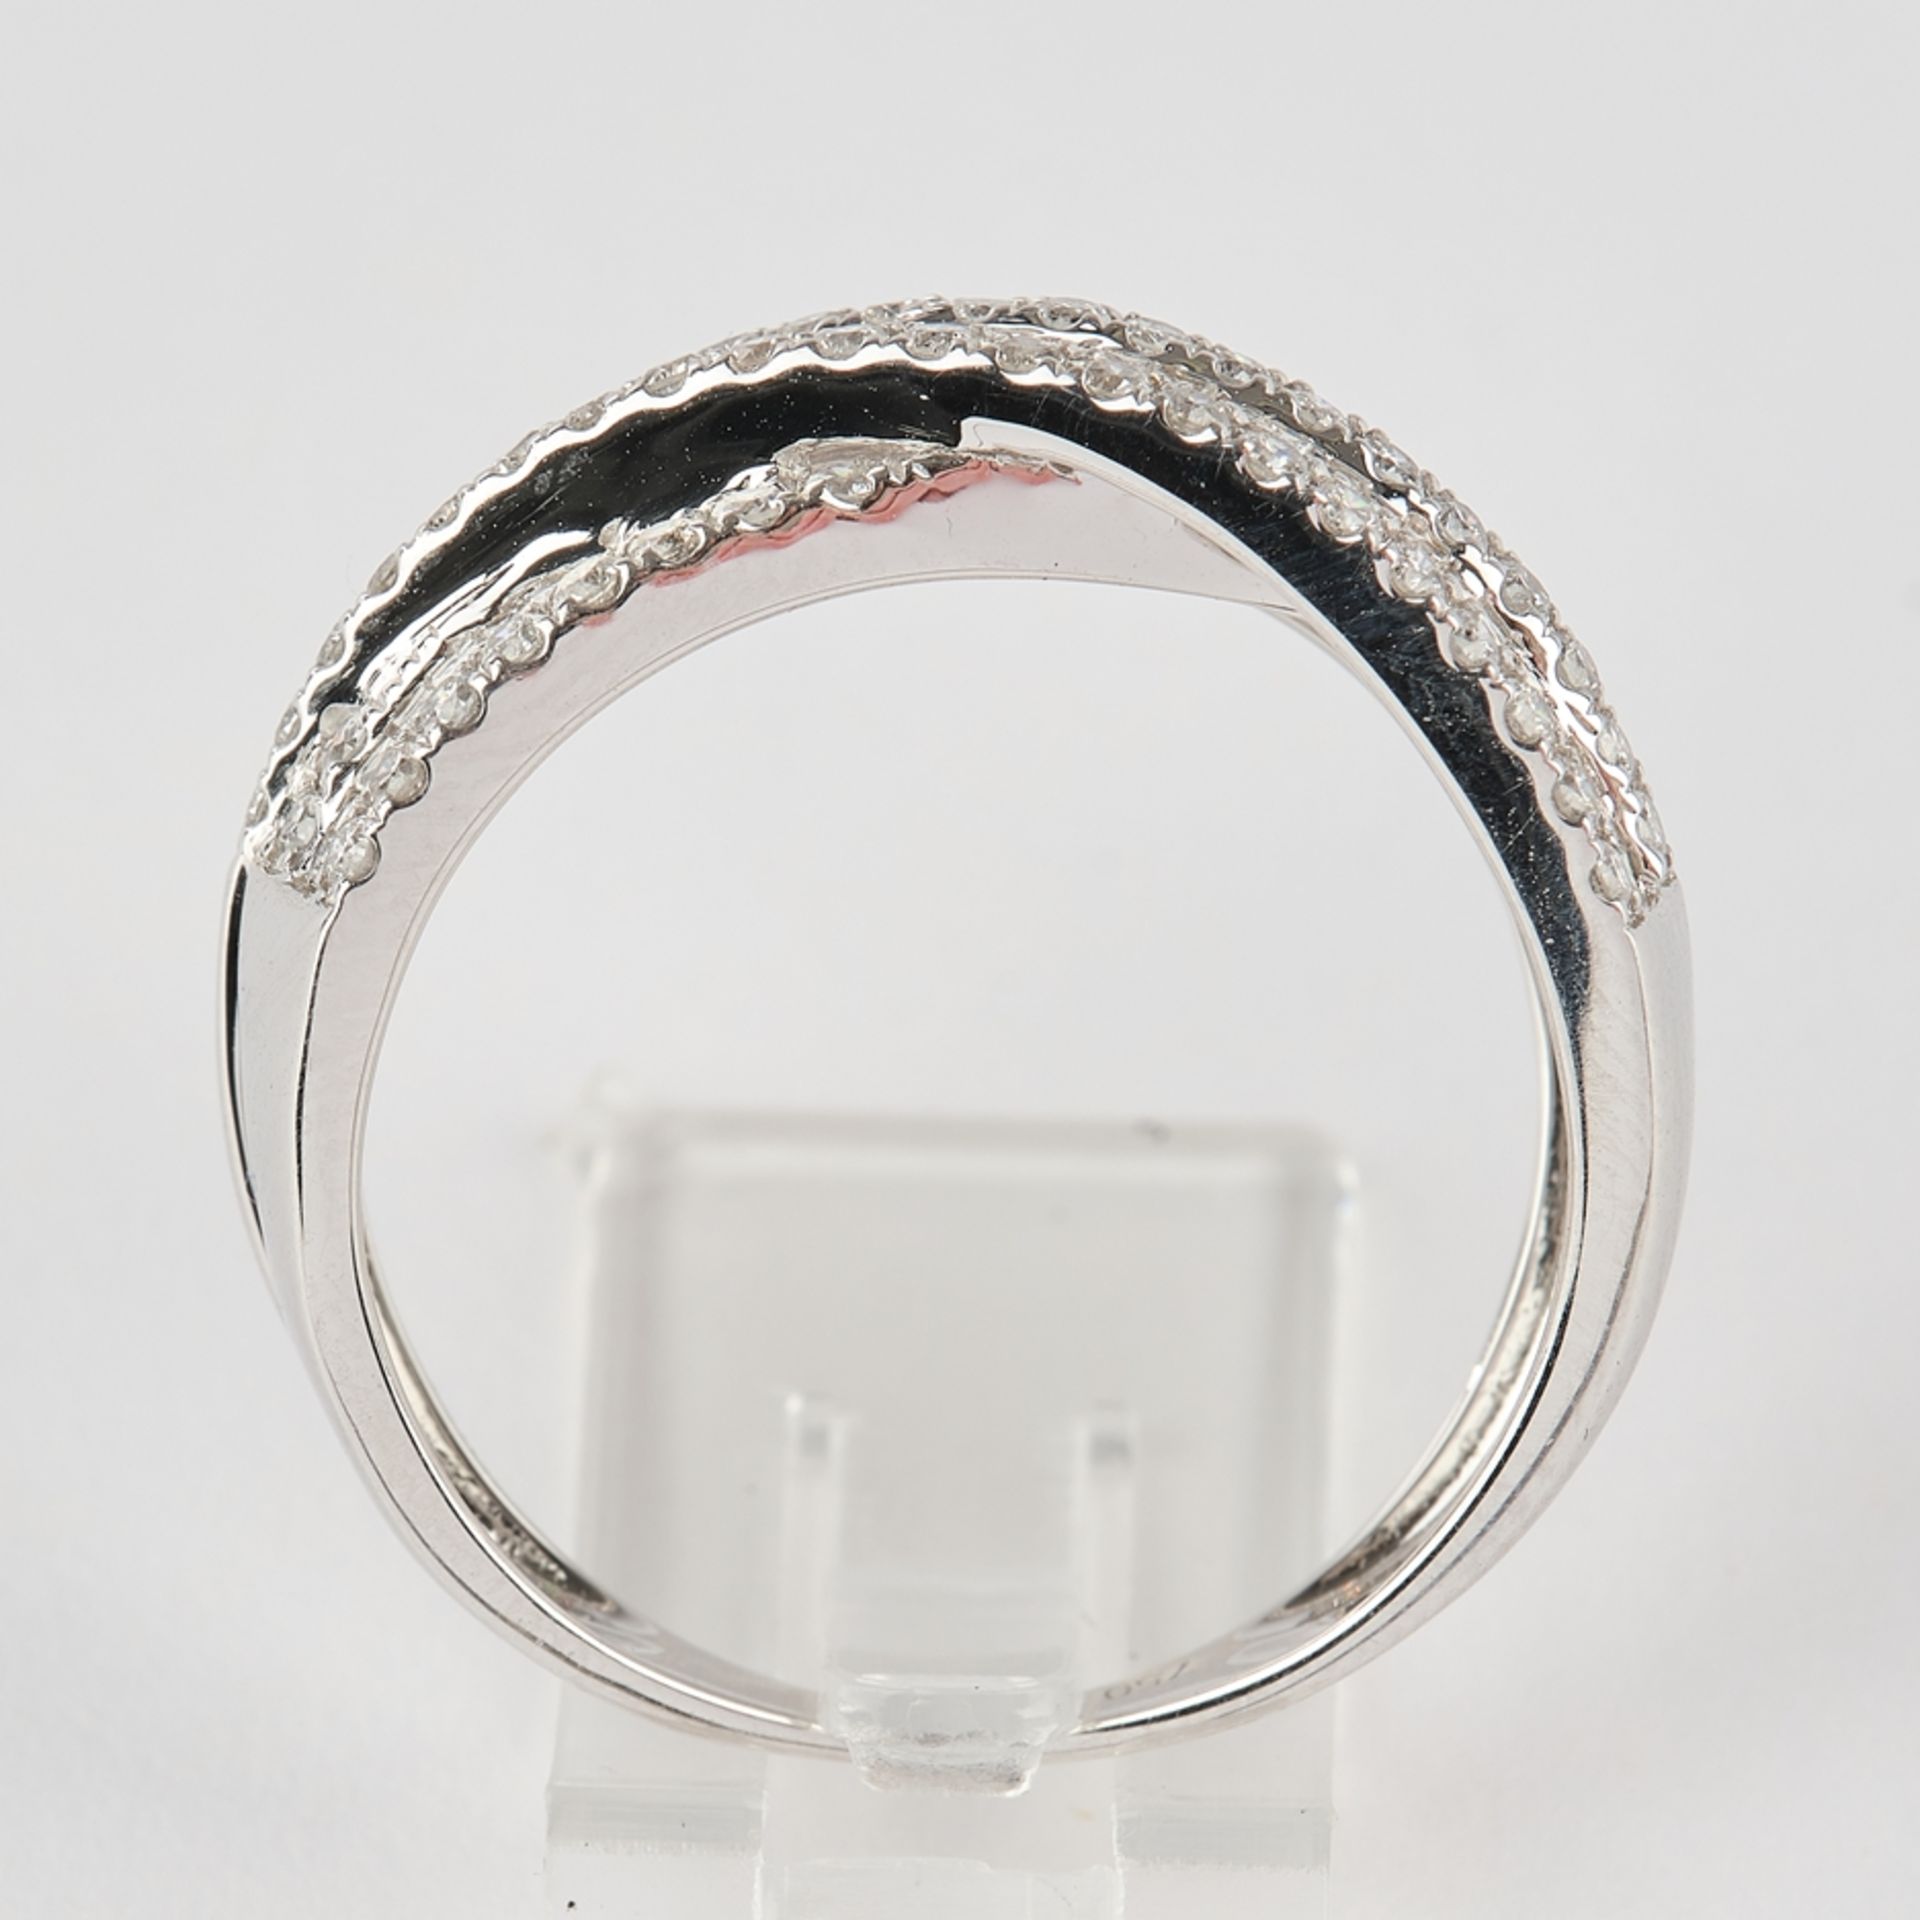 Crossover-Ring, WG 750, Diamanten und Brillanten zus. ca. 0.83 ct., RM 16 - Bild 3 aus 3